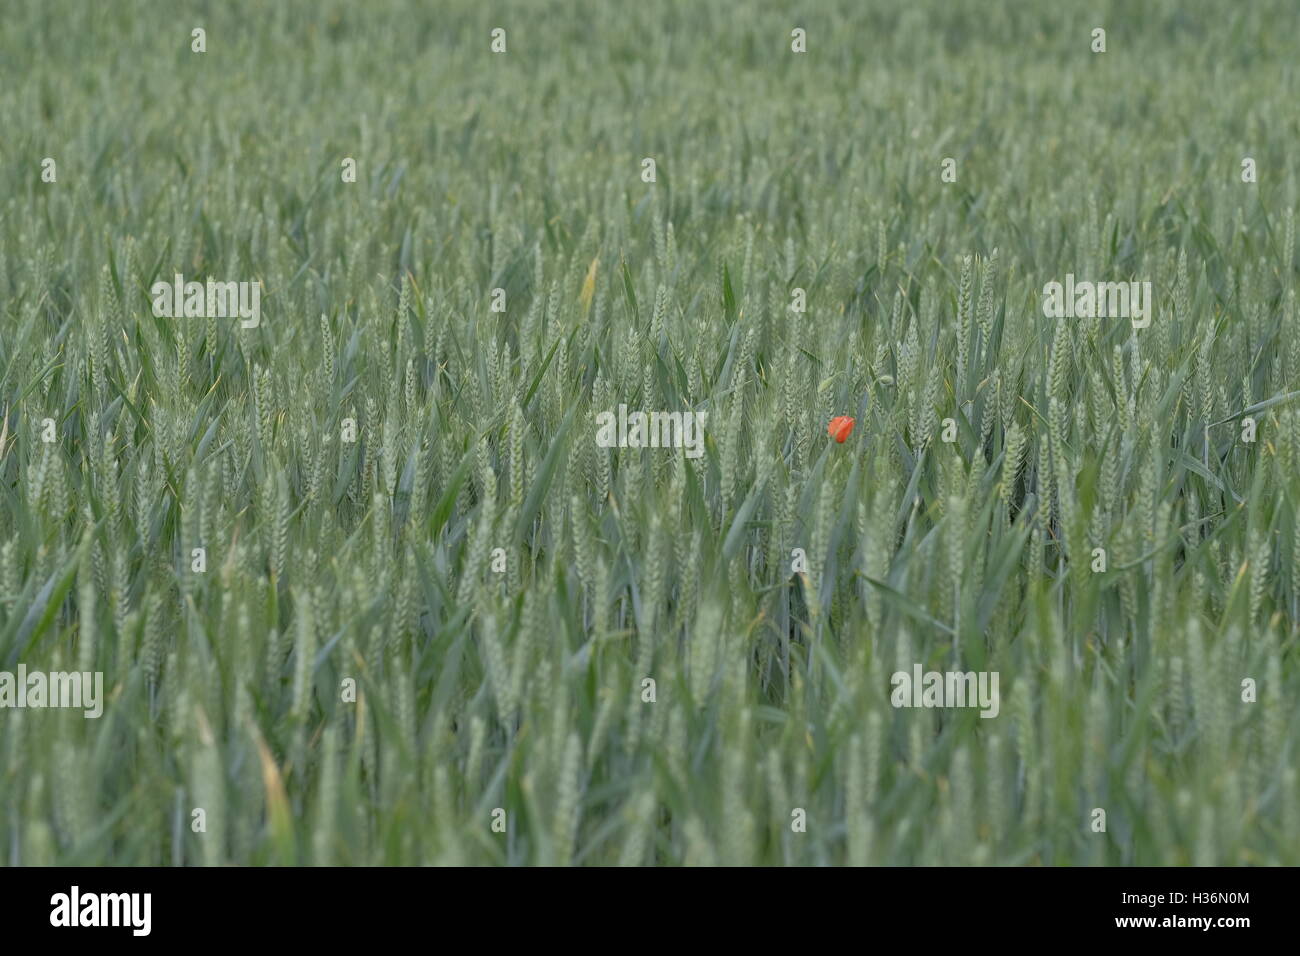 Eine einzelne rote Mohnblume wächst in einem grünen Mais-Feld Stockfoto